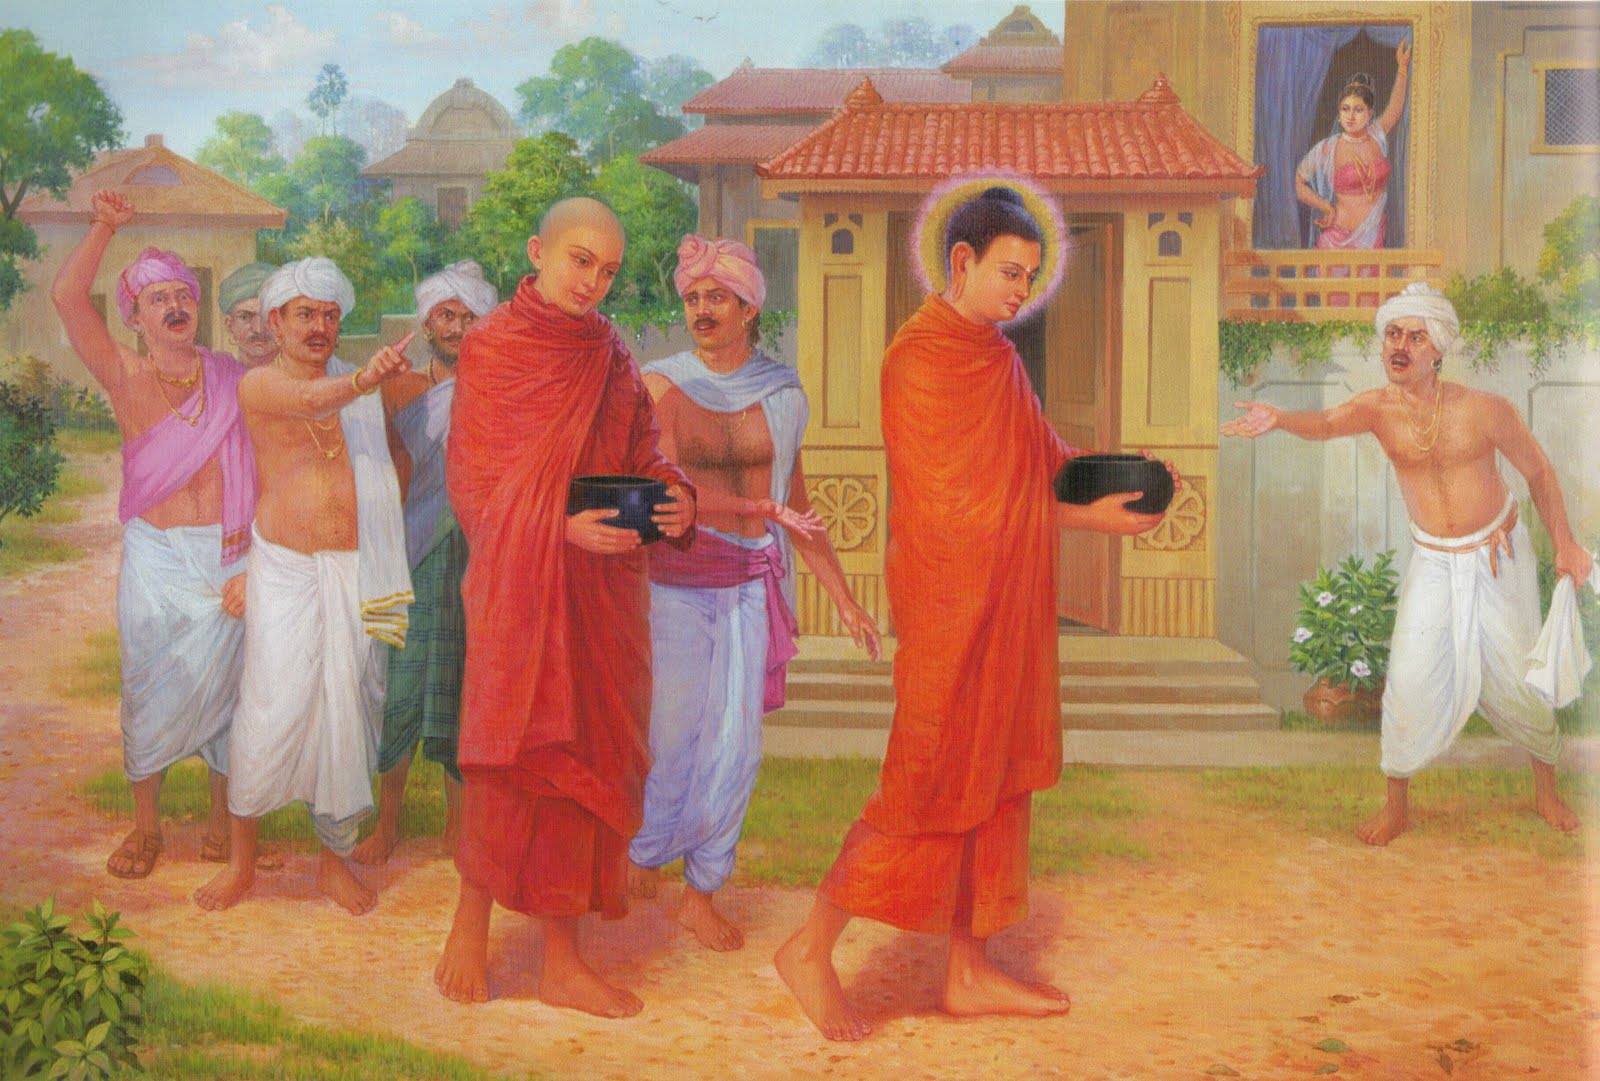 Khi trì bình khất thực, Đức Phật cũng từng gặp những người buông lời không tốt, chửi bới, vu khống Ngài và Tăng đoàn (ảnh minh họa)